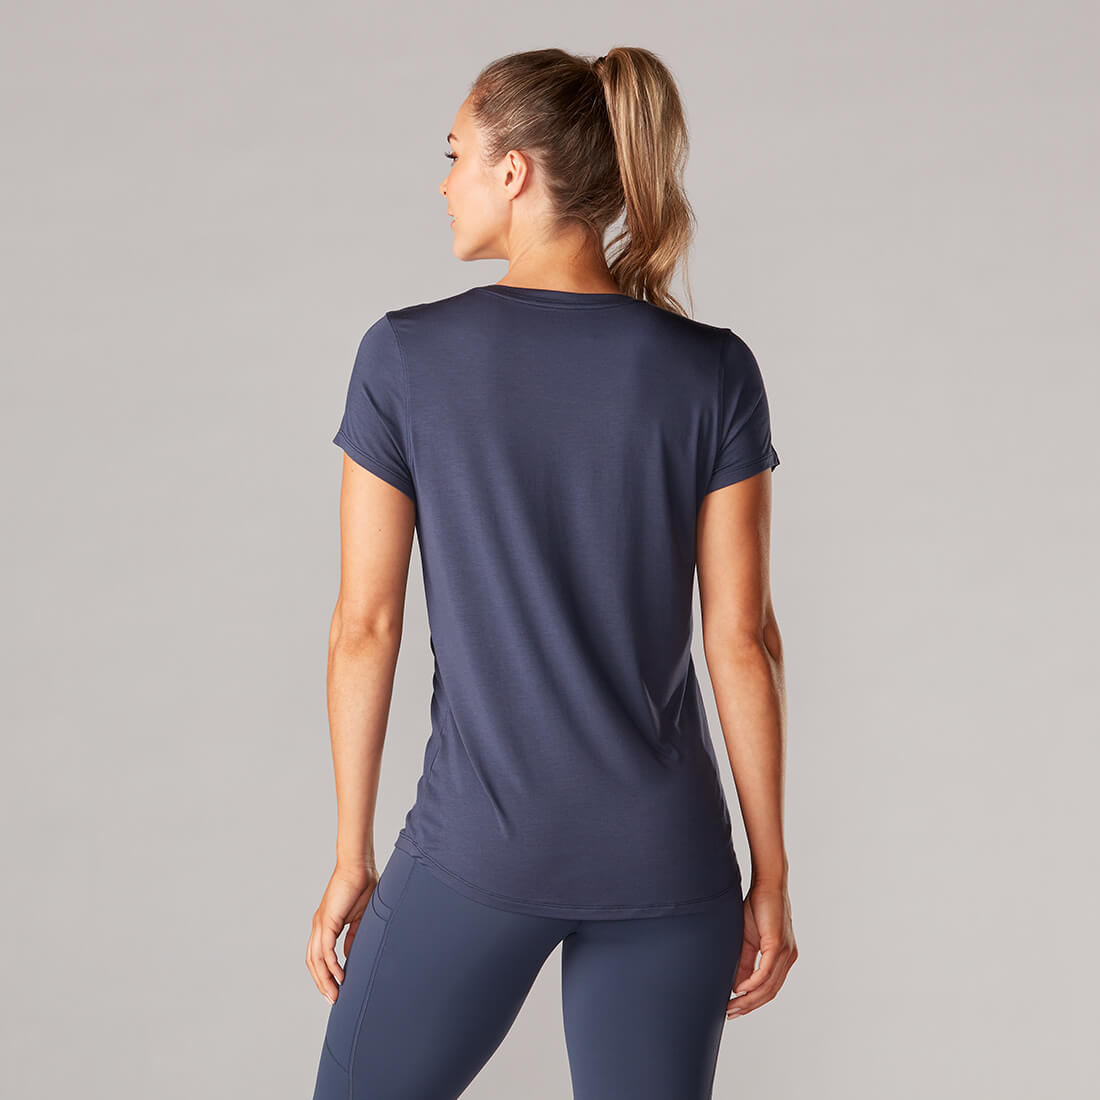 Pebish Mathis Geest Sportshirt voor dames kopen? Shop nu online bij Yoga-Pilatesshop.nl!